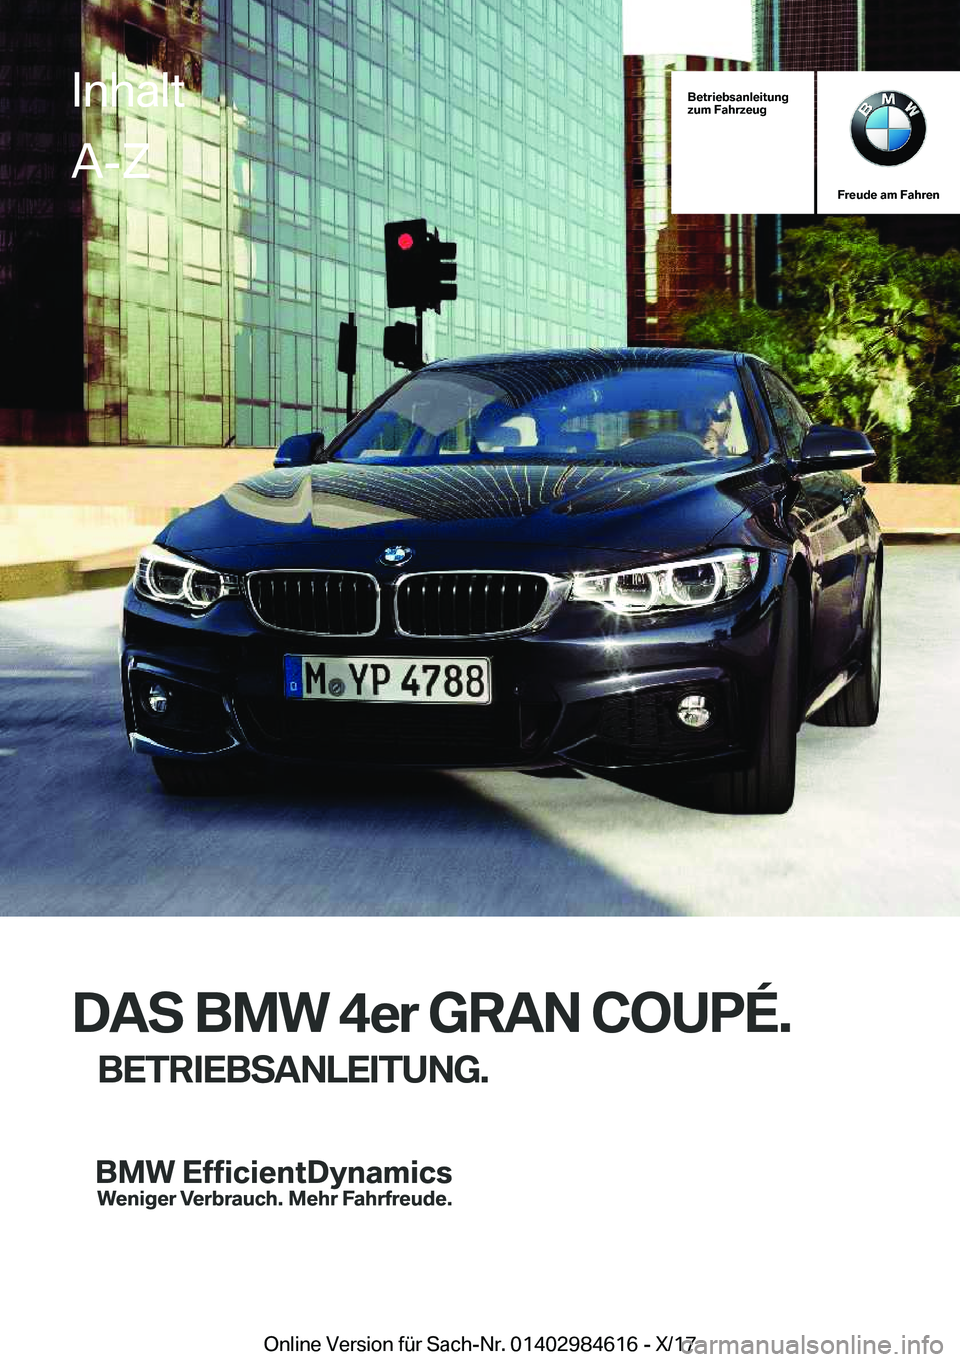 BMW 4 SERIES GRAN COUPE 2018  Betriebsanleitungen (in German) �B�e�t�r�i�e�b�s�a�n�l�e�i�t�u�n�g
�z�u�m��F�a�h�r�z�e�u�g
�F�r�e�u�d�e��a�m��F�a�h�r�e�n
�D�A�S��B�M�W��4�e�r��G�R�A�N��C�O�U�P�